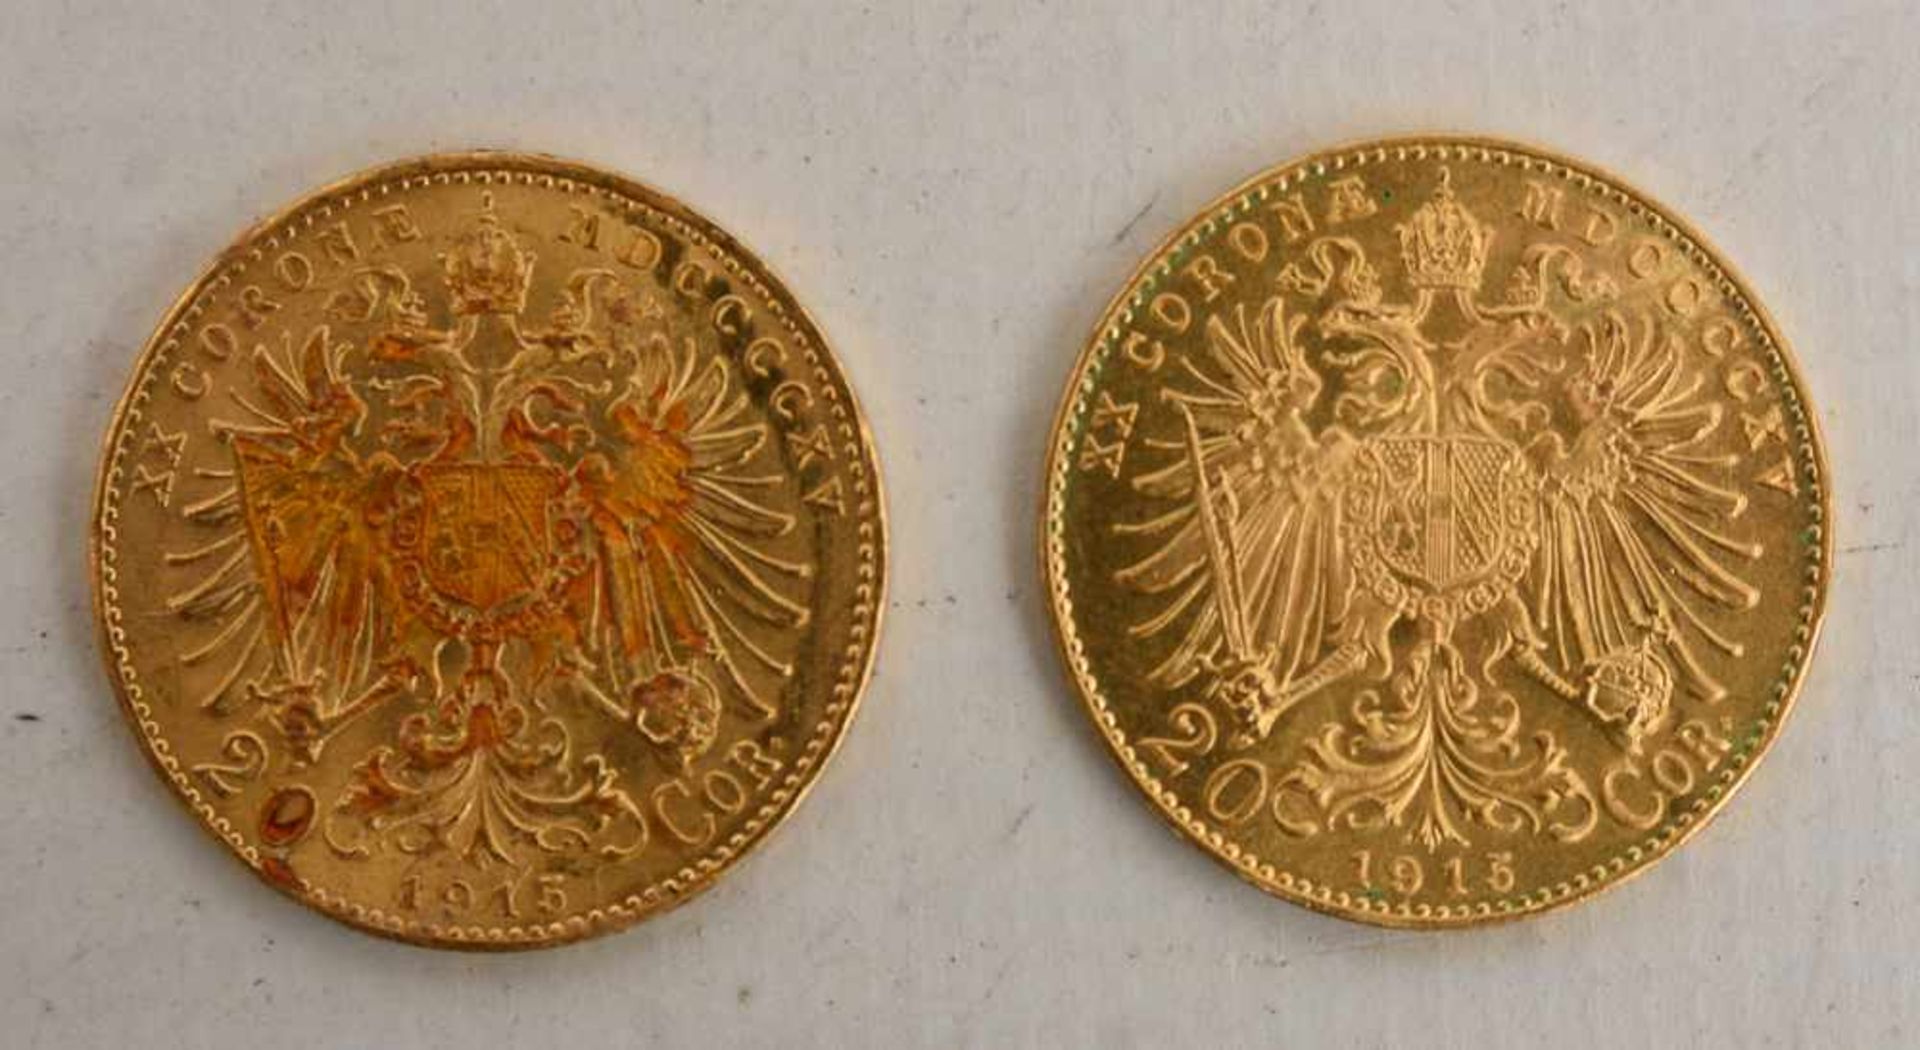 GOLDMÜNZEN KONVOLUT, Dukaten und Florin, 19. und. 20. Jahrhundert (3) 6 Münzen Konvolut bestehend - Image 9 of 9